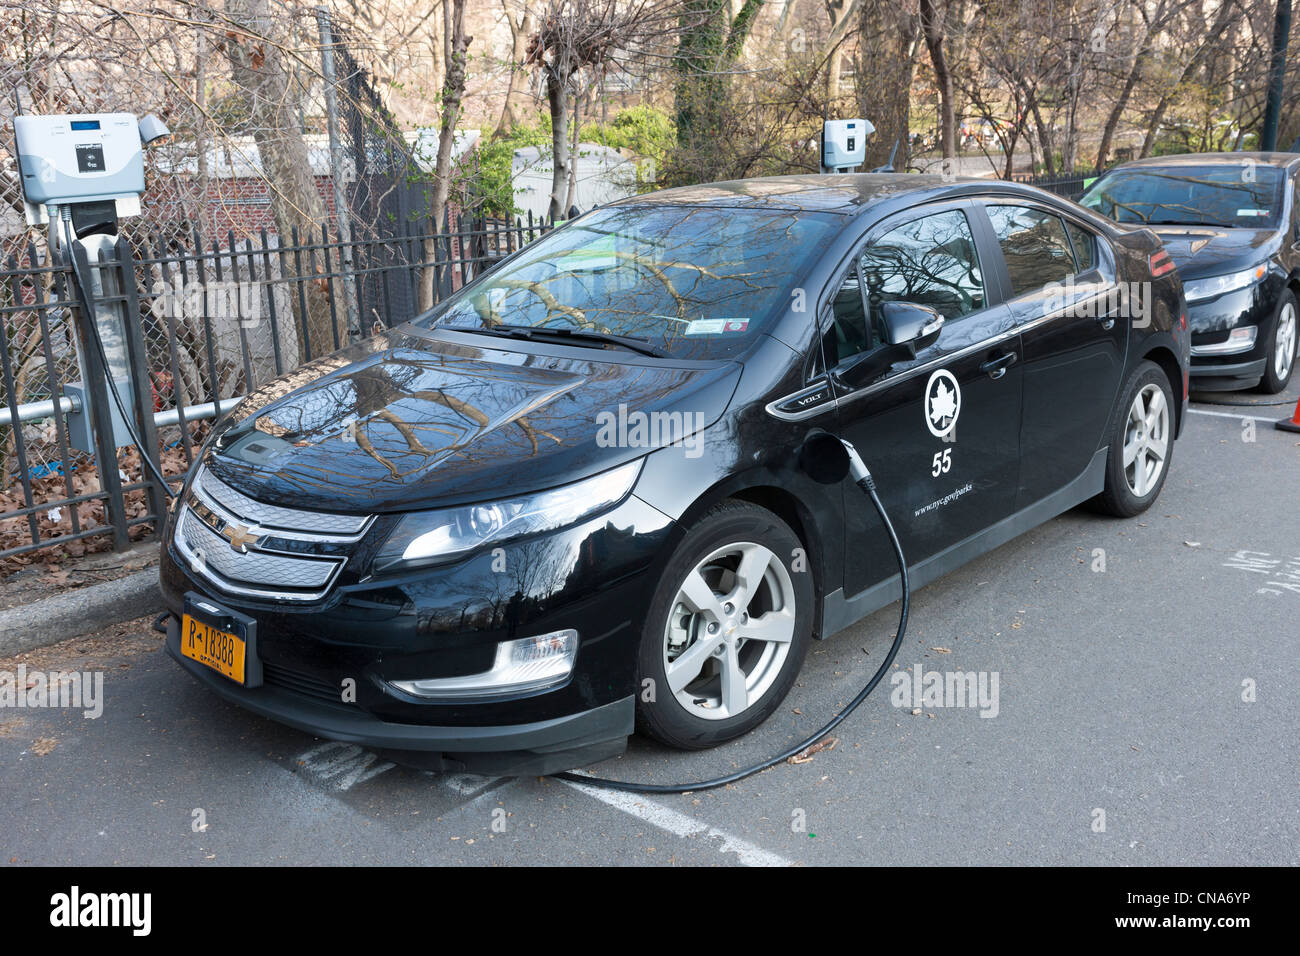 Un coche eléctrico híbrido Chevy Volt, utilizado por el Departamento de Parques de la ciudad de Nueva York, recibe un cargo en una estación de carga, en Central Park. Foto de stock